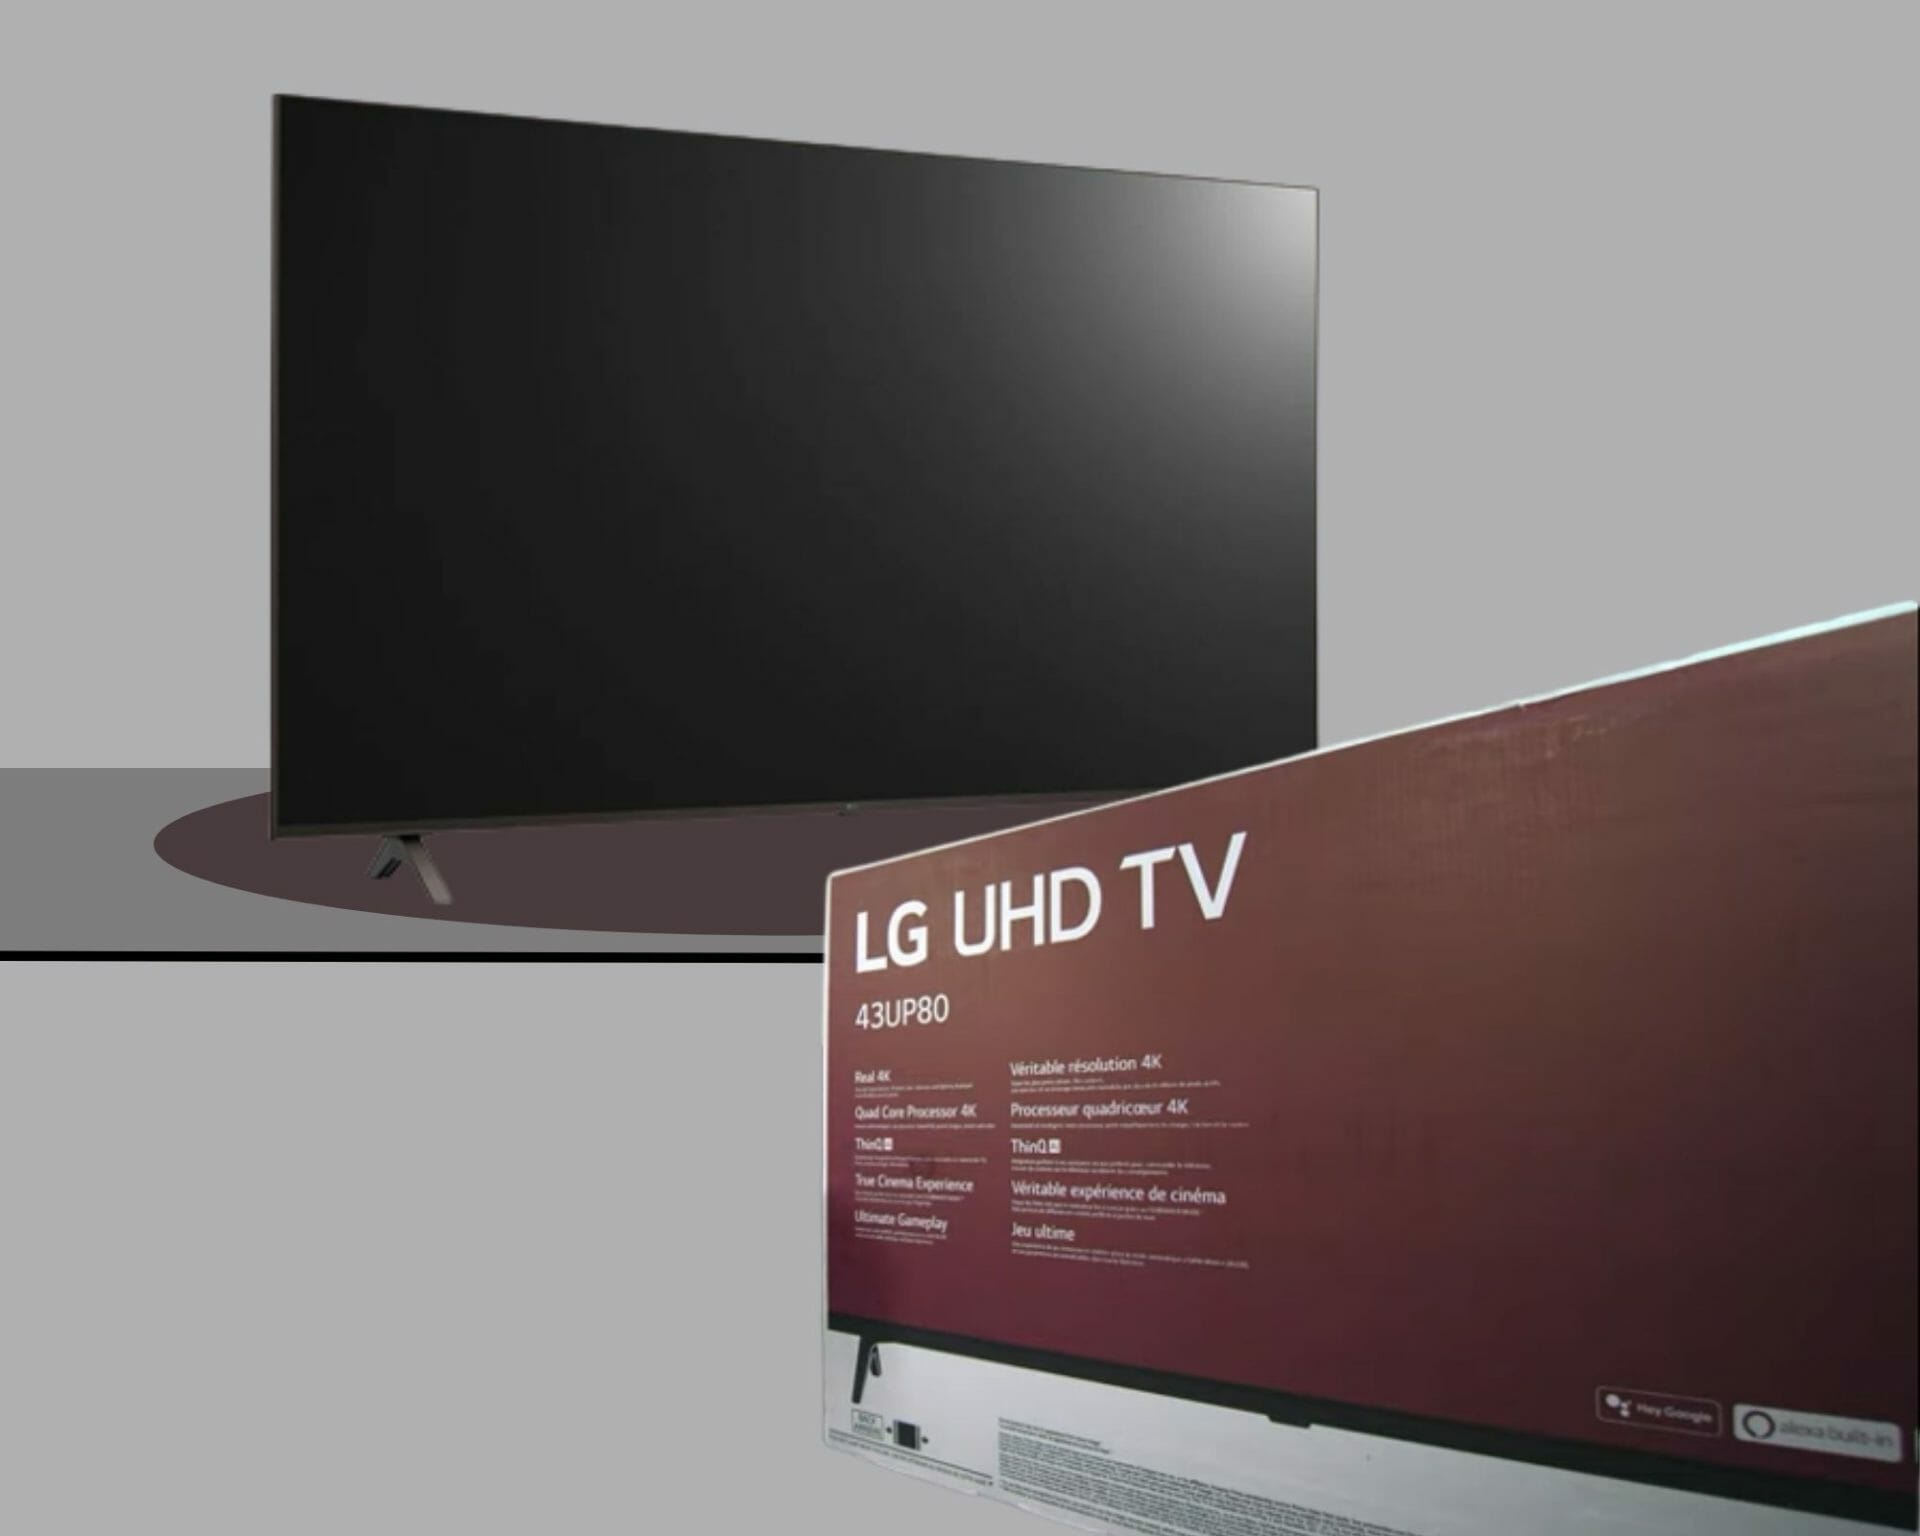 LG UHD TV and its box